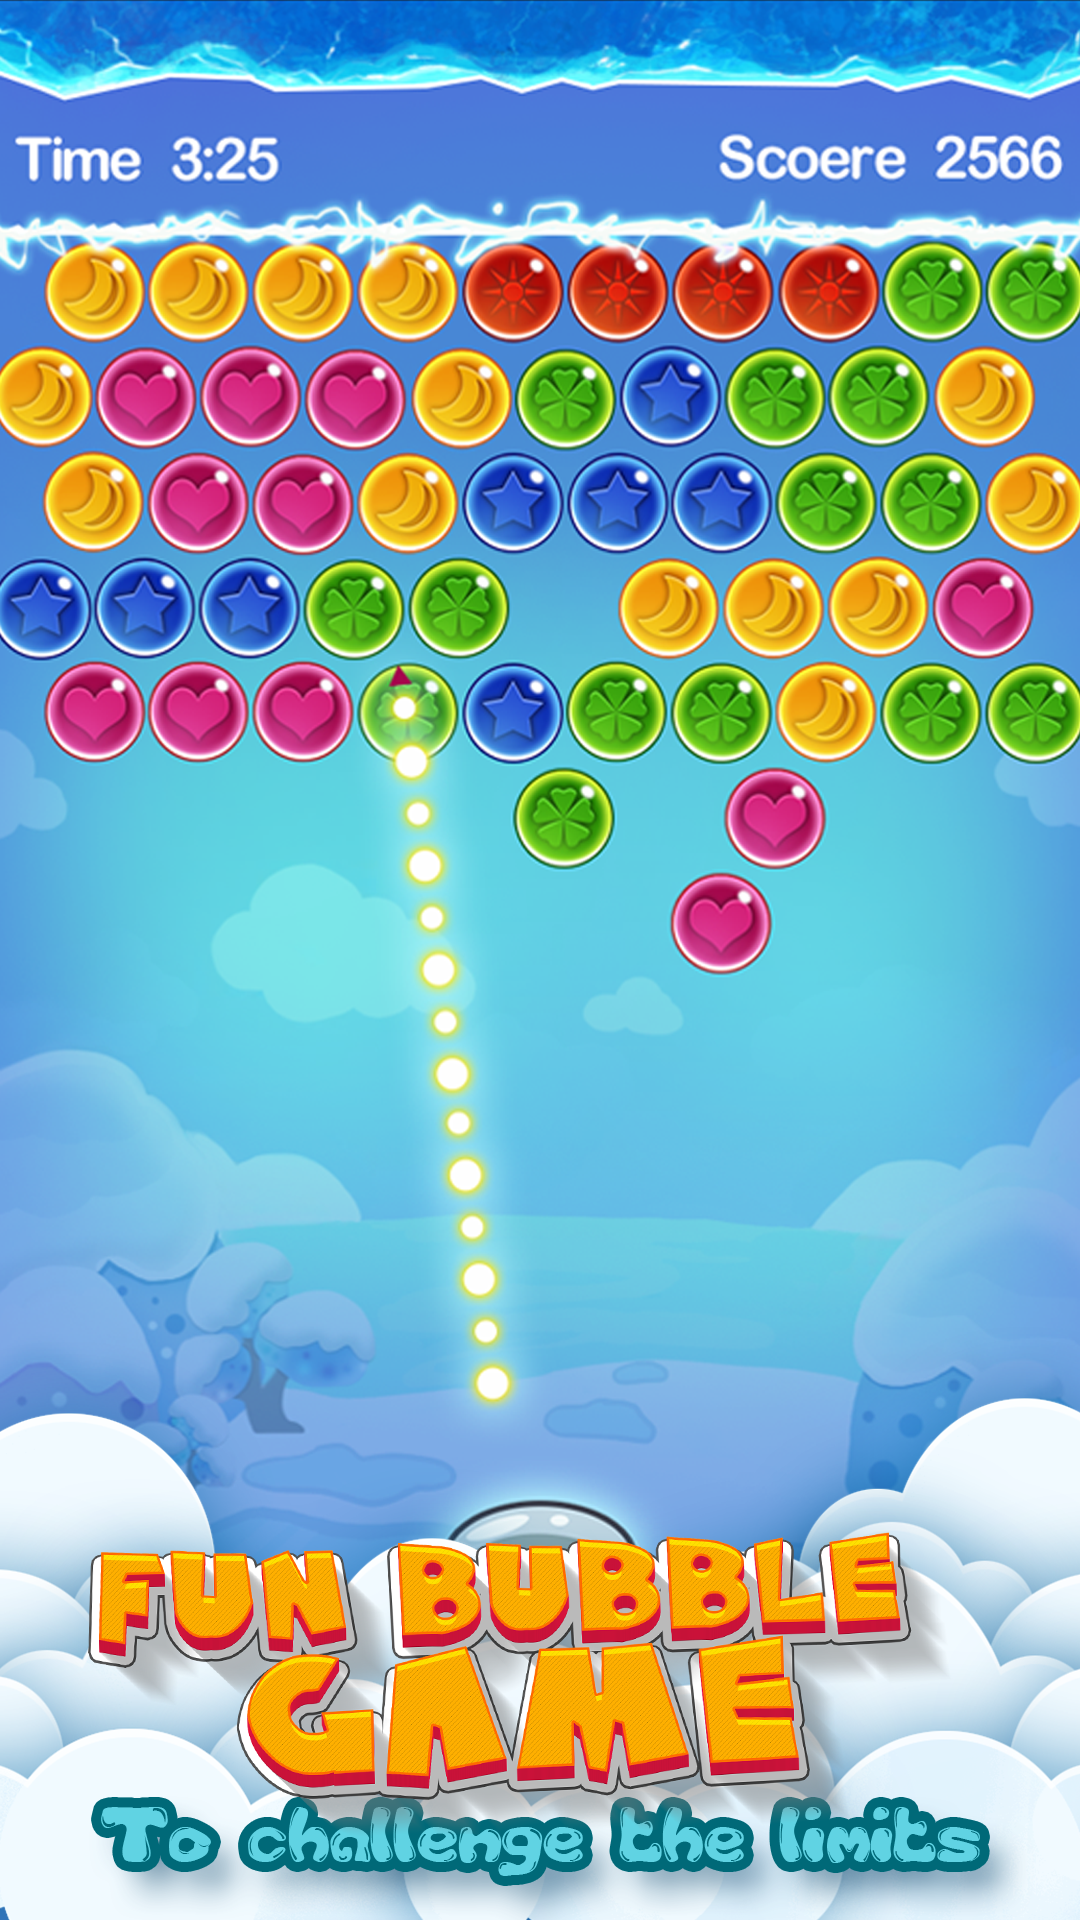 Screenshot 1 of Bubble Shooter - Permainan Teka-teki Kasual Popular Percuma 4.0